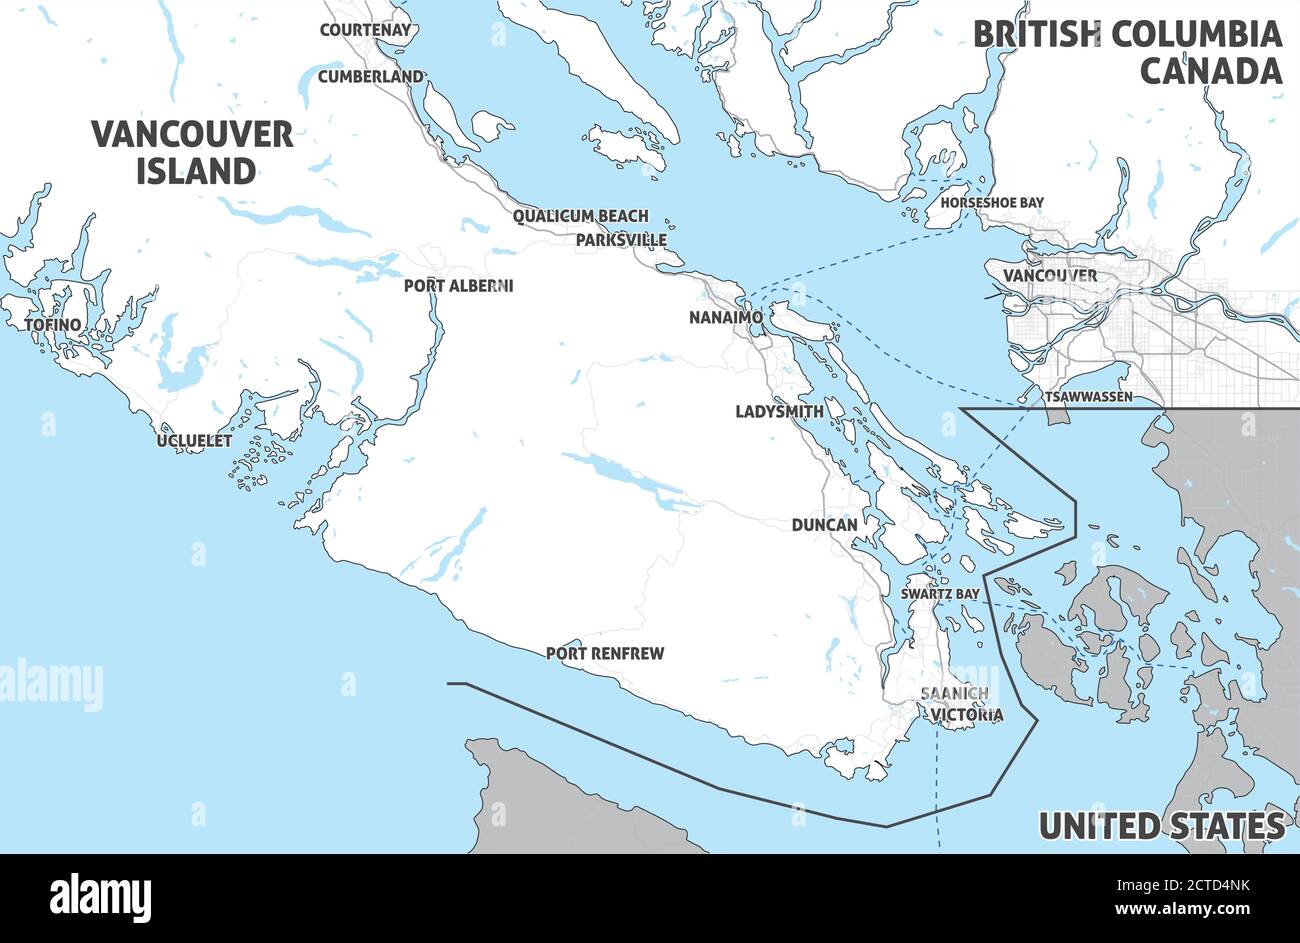 Carte de l'île de Vancouver (Nanaimo, Victoria, Tofino) et du Grand Vancouver. Canada, Colombie-Britannique. Carte simple avec formes optimisées. Illustration de Vecteur